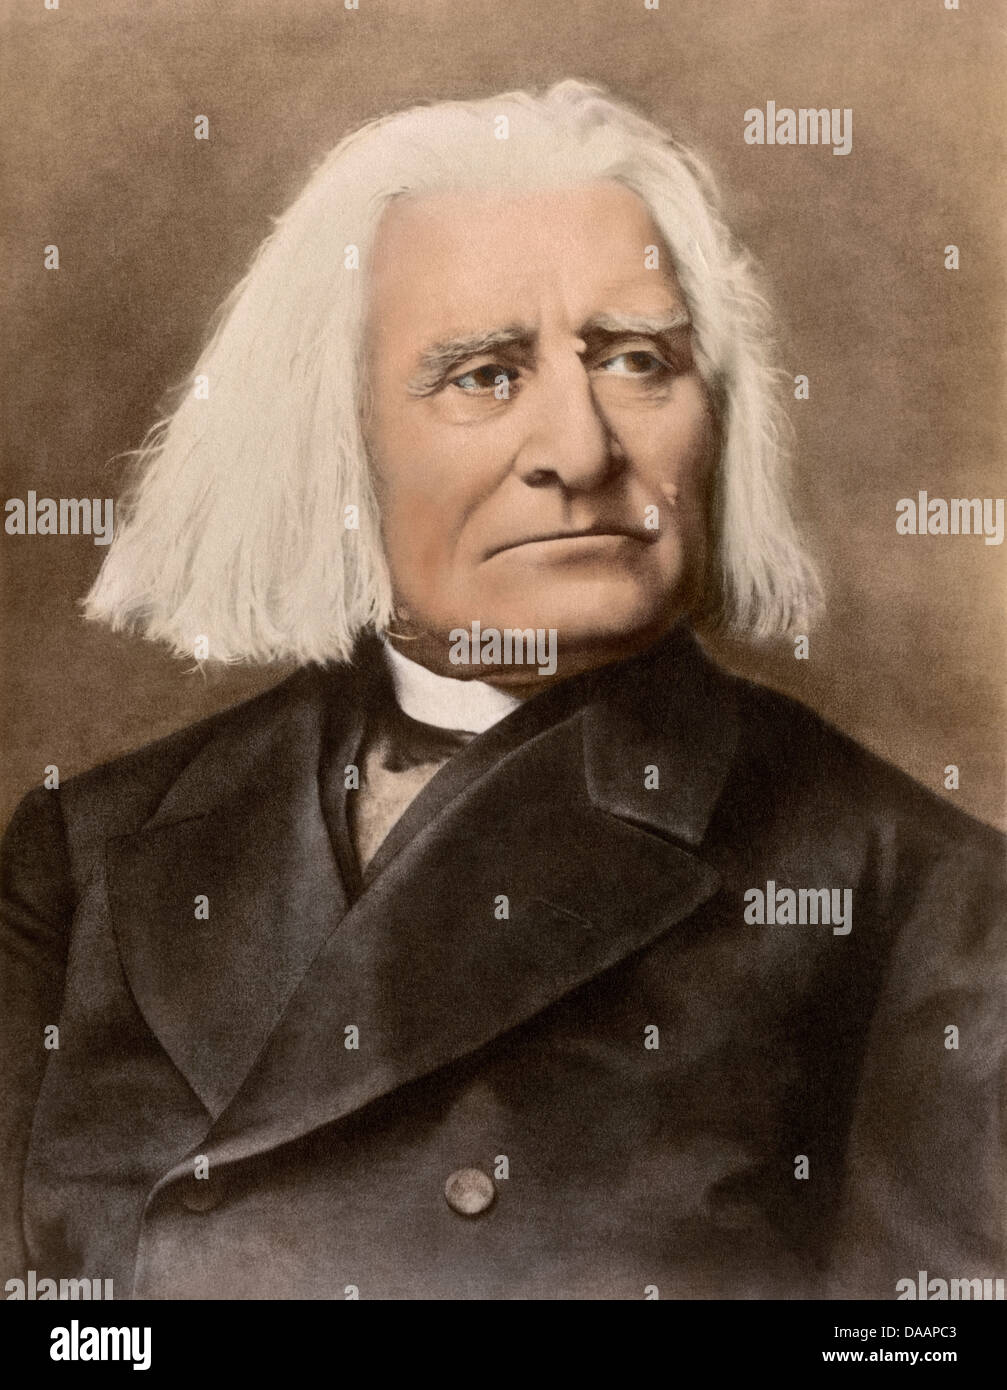 D'orchestre et compositeur hongrois Franz Liszt. Photographie couleur numérique Banque D'Images